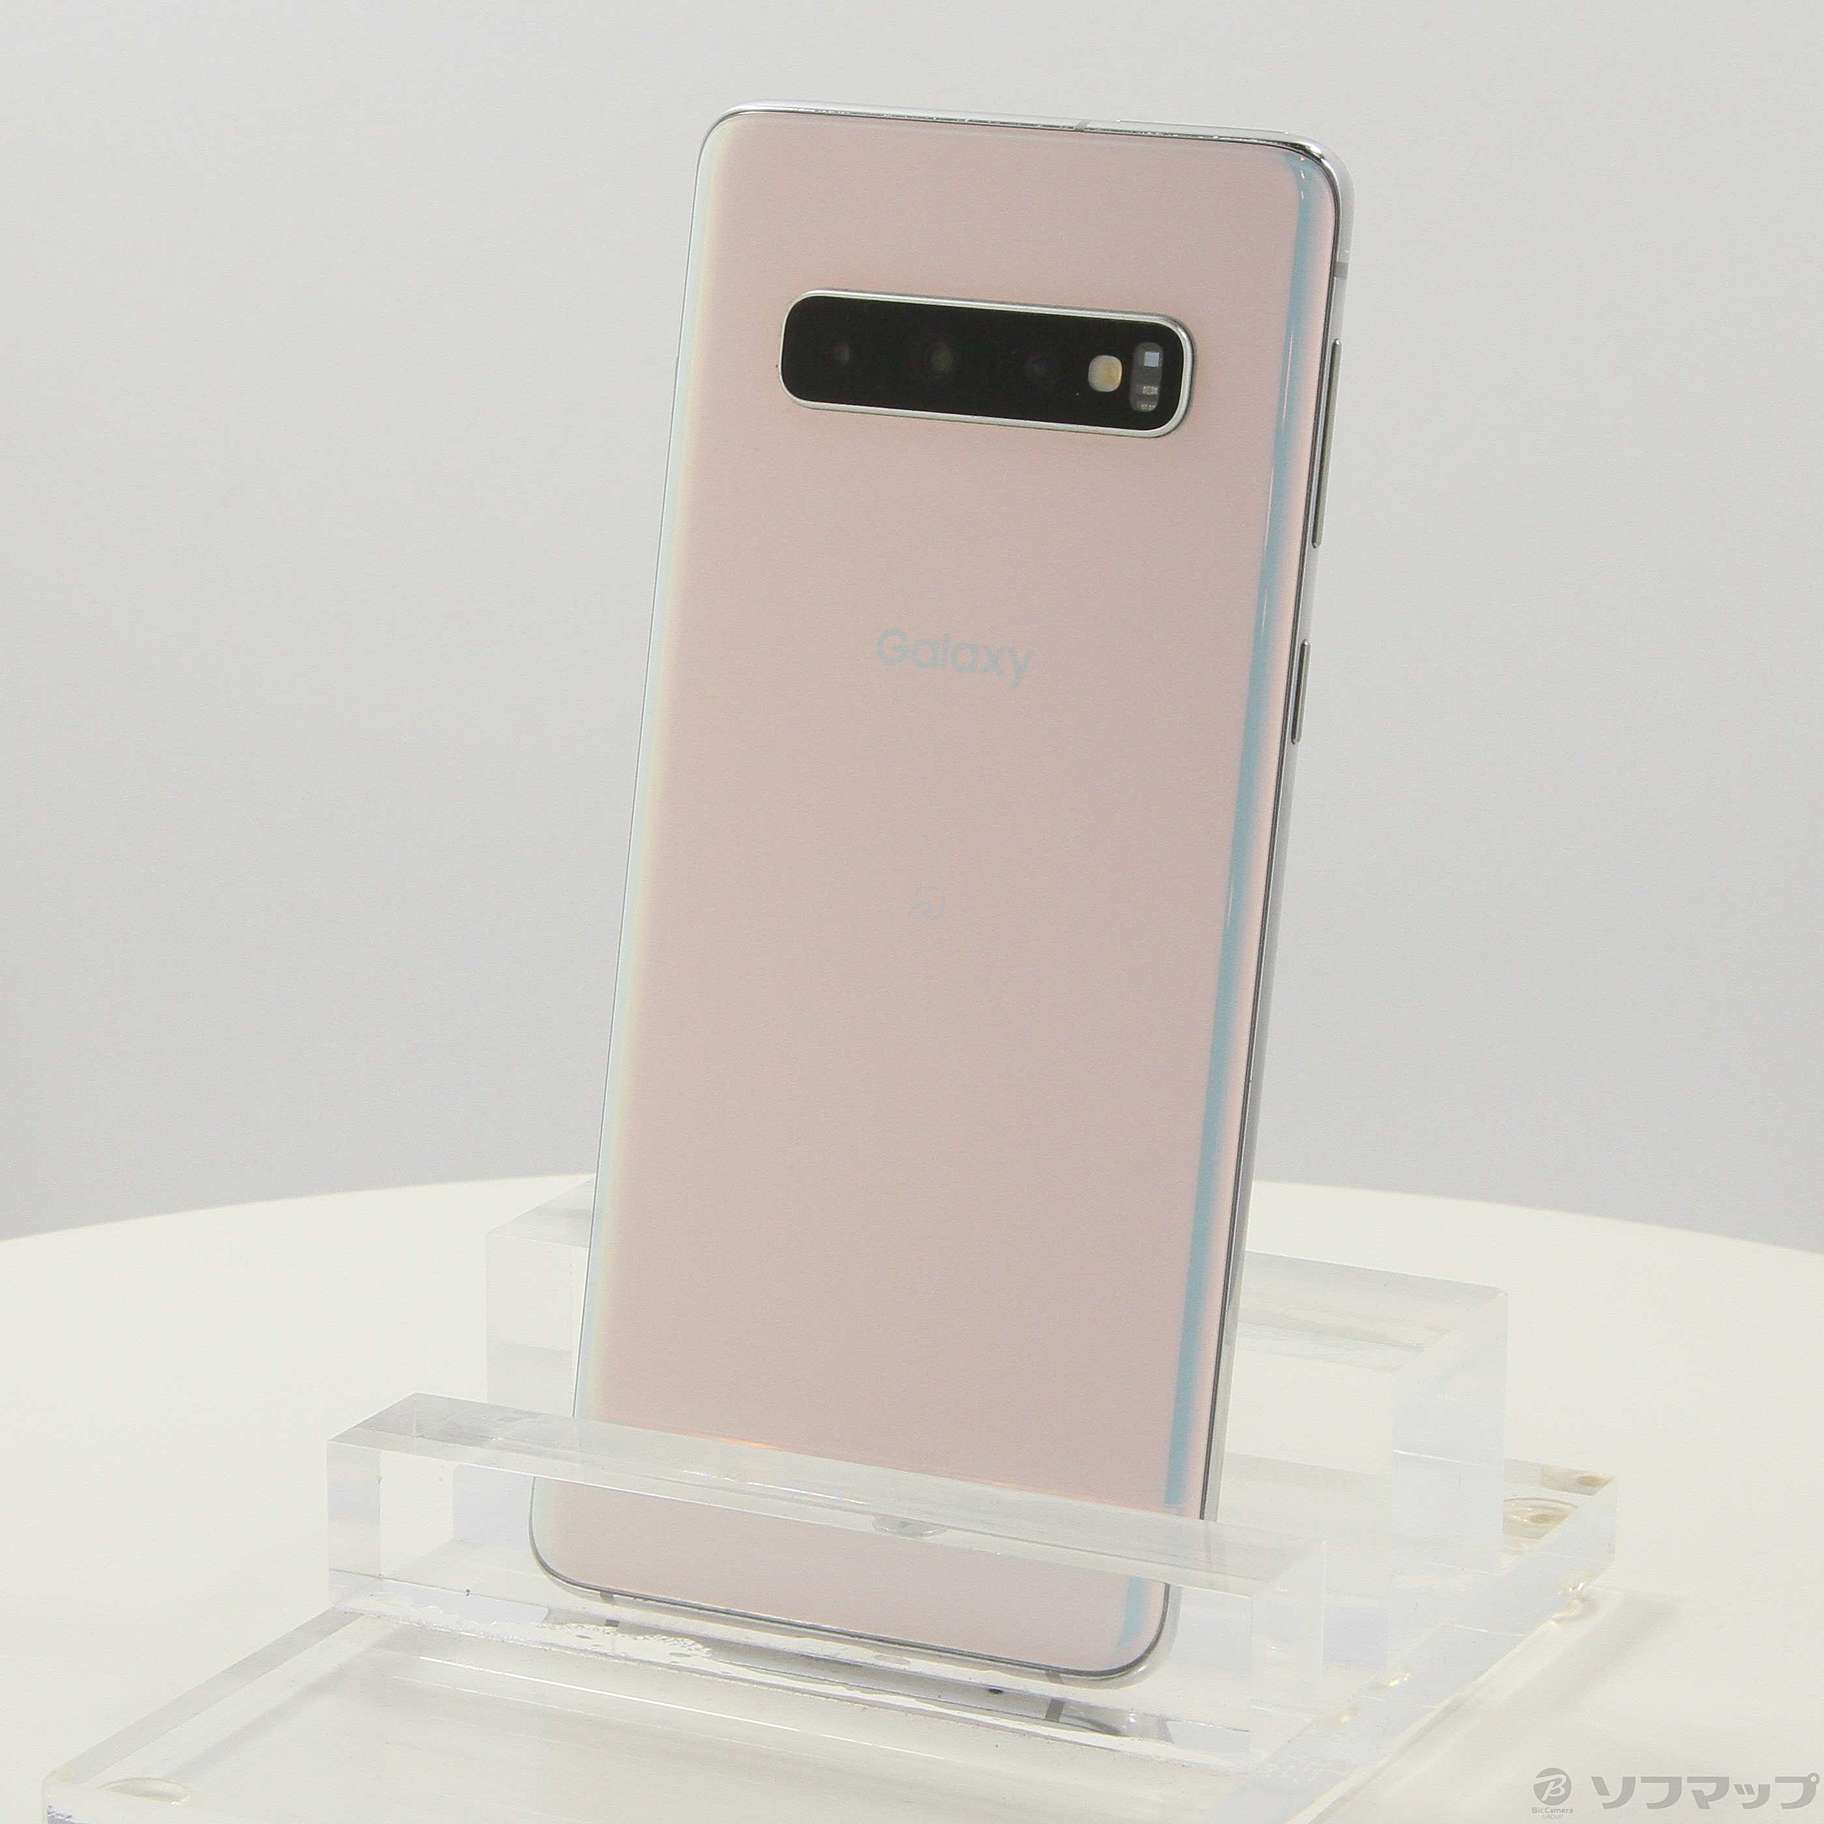 Galaxy S10 Prism White 128 GB SIMフリー購入したキャリア